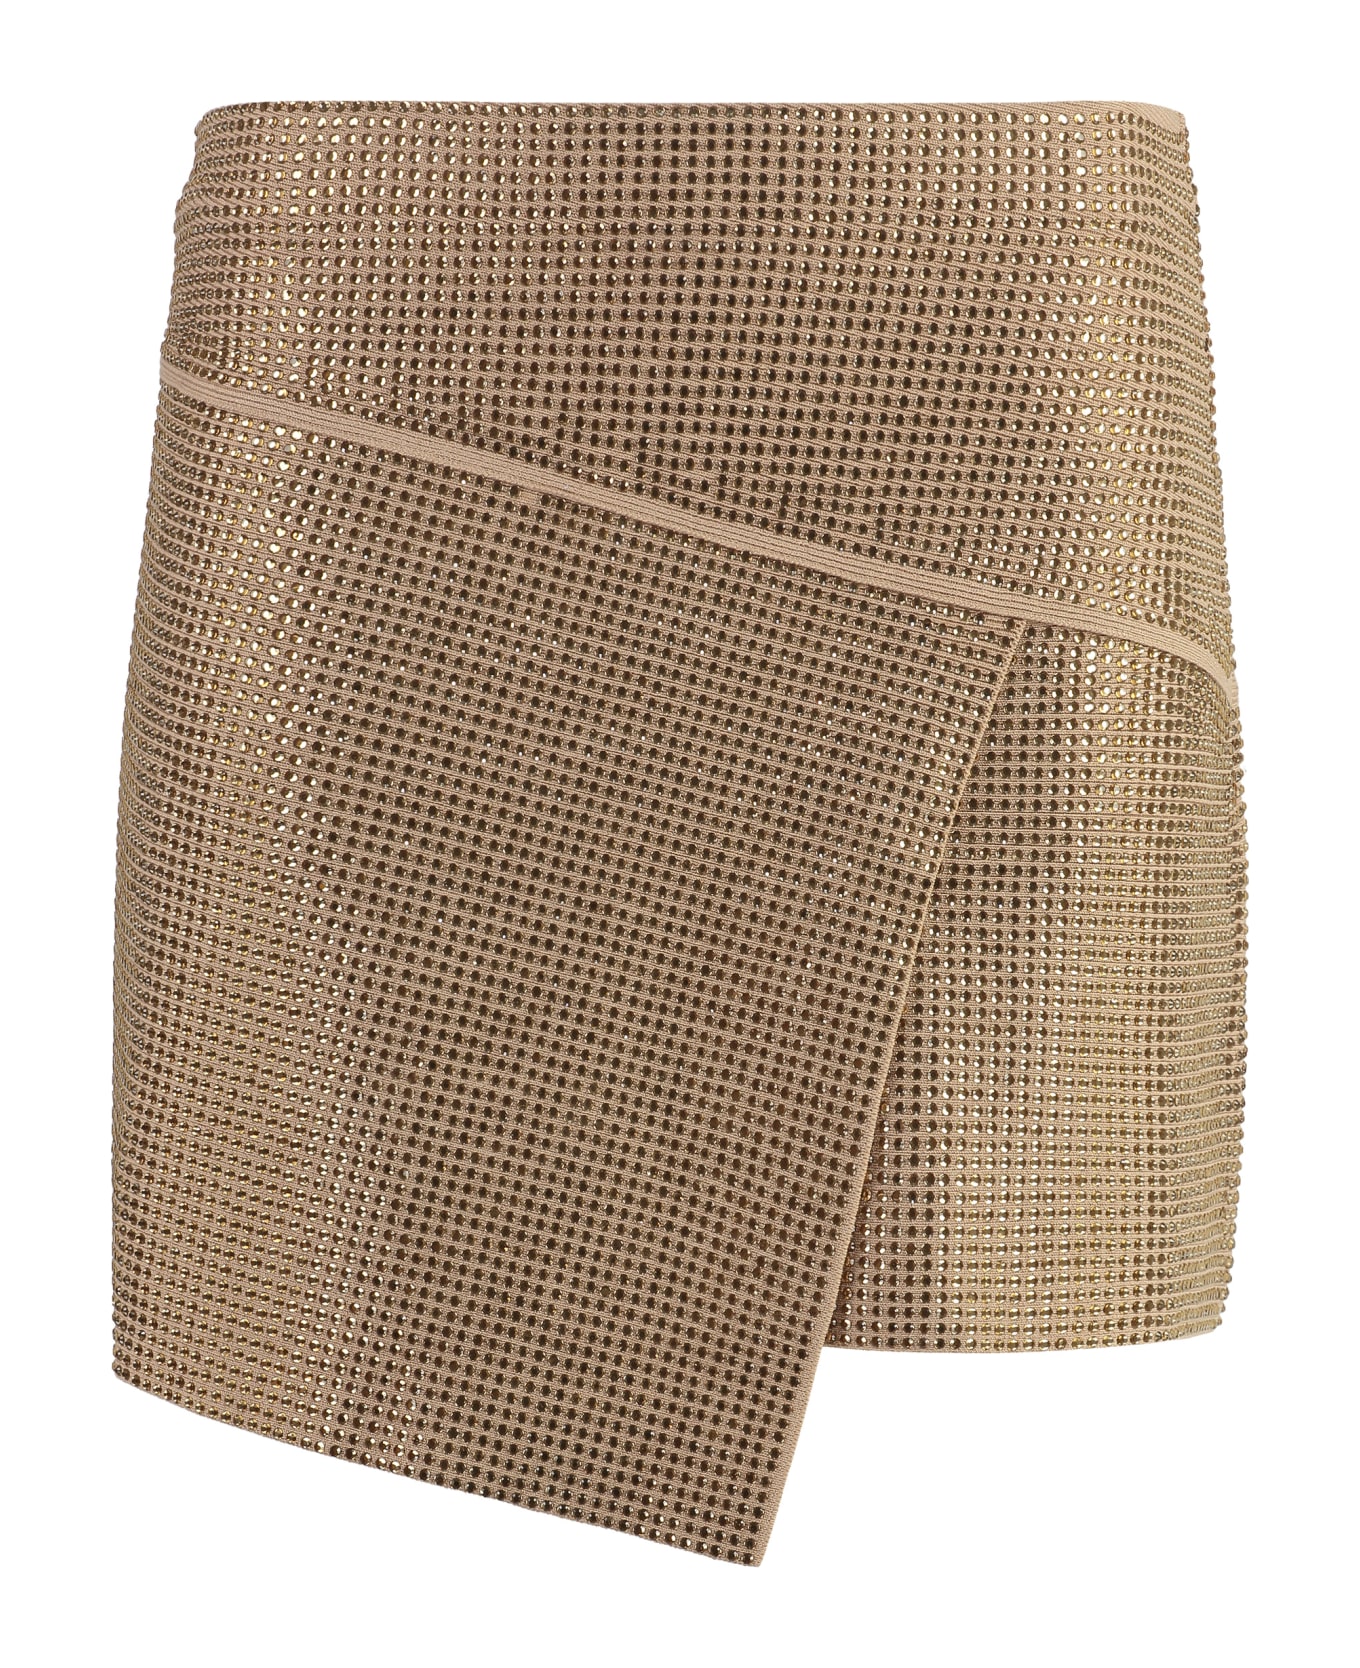 ANDREĀDAMO Asymmetric Miniskirt - Gold